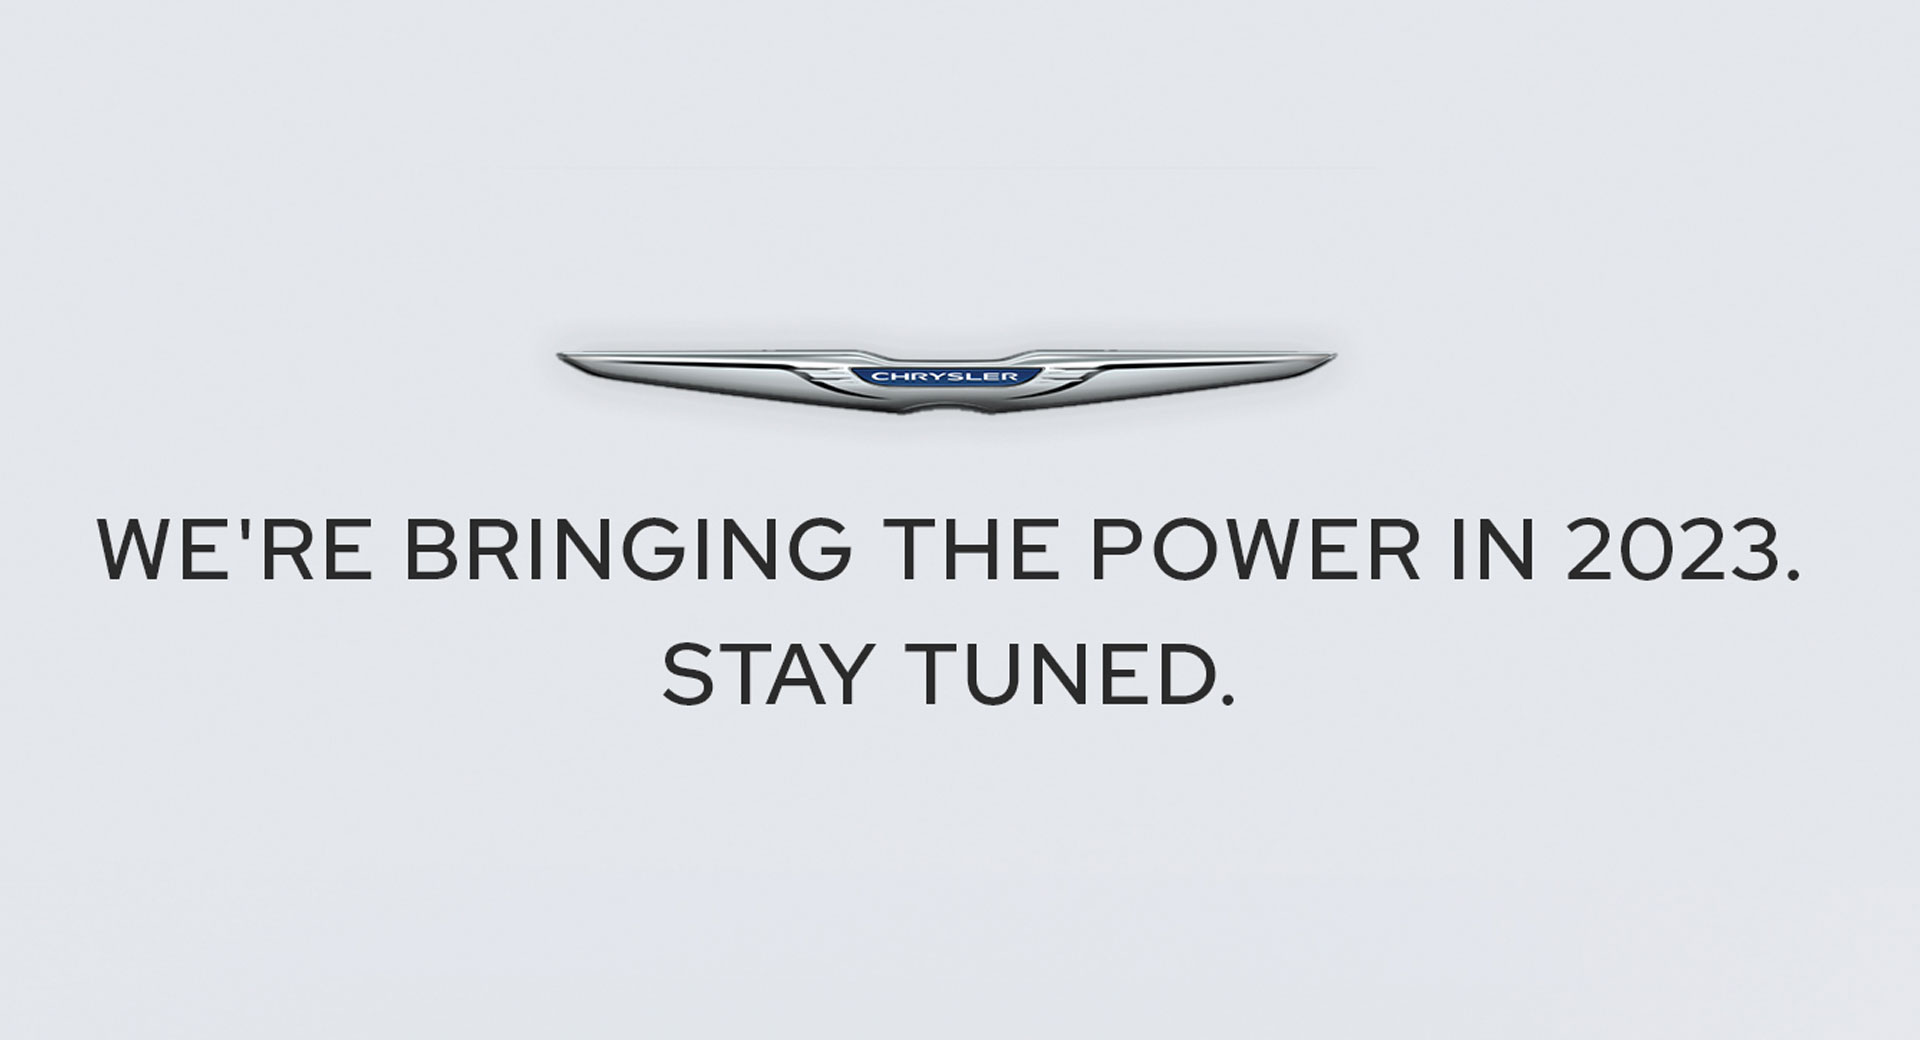 Quelques jours après avoir annoncé une édition spéciale 300, Chrysler dit qu’ils « apportent la puissance » en 2023